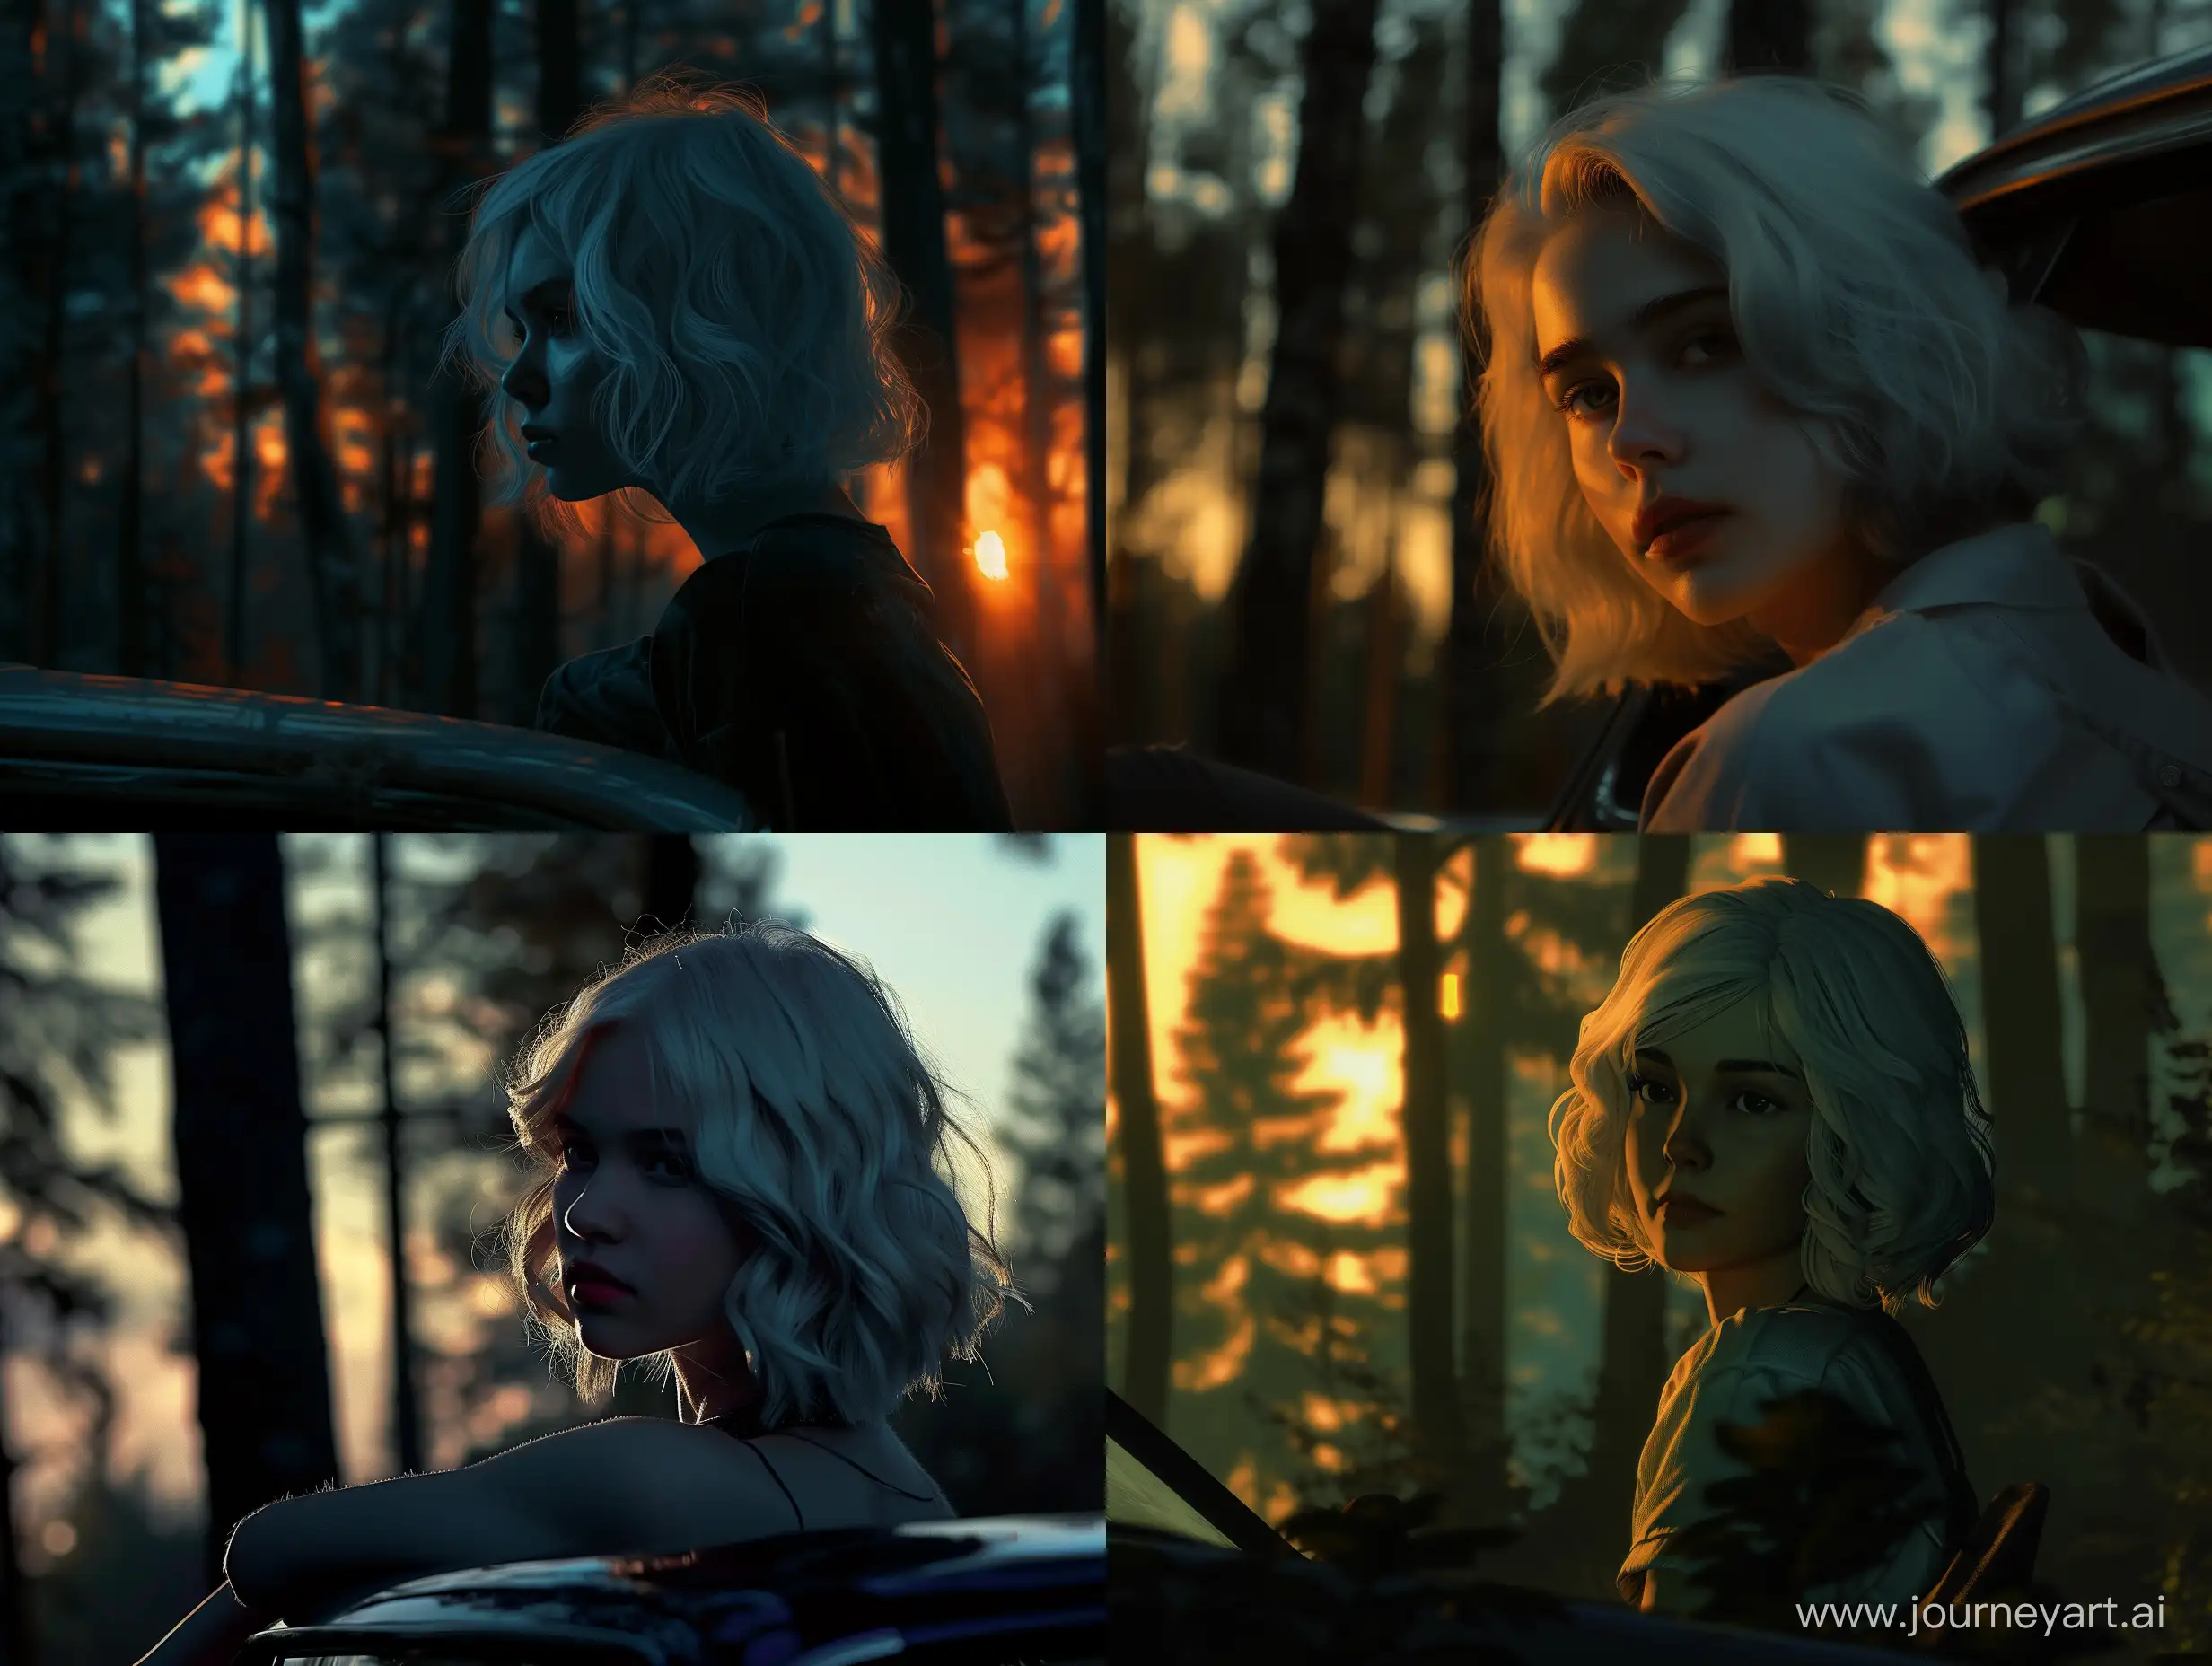 Сцена: Закат, в лесу.
Персонаж: девушка, смотрящая в даль.
Прическа: Каре. цвет белый, волнистые волосы. 
Освещение: реалистичное, тени.
Поза персонажа: Сидя на машине.

